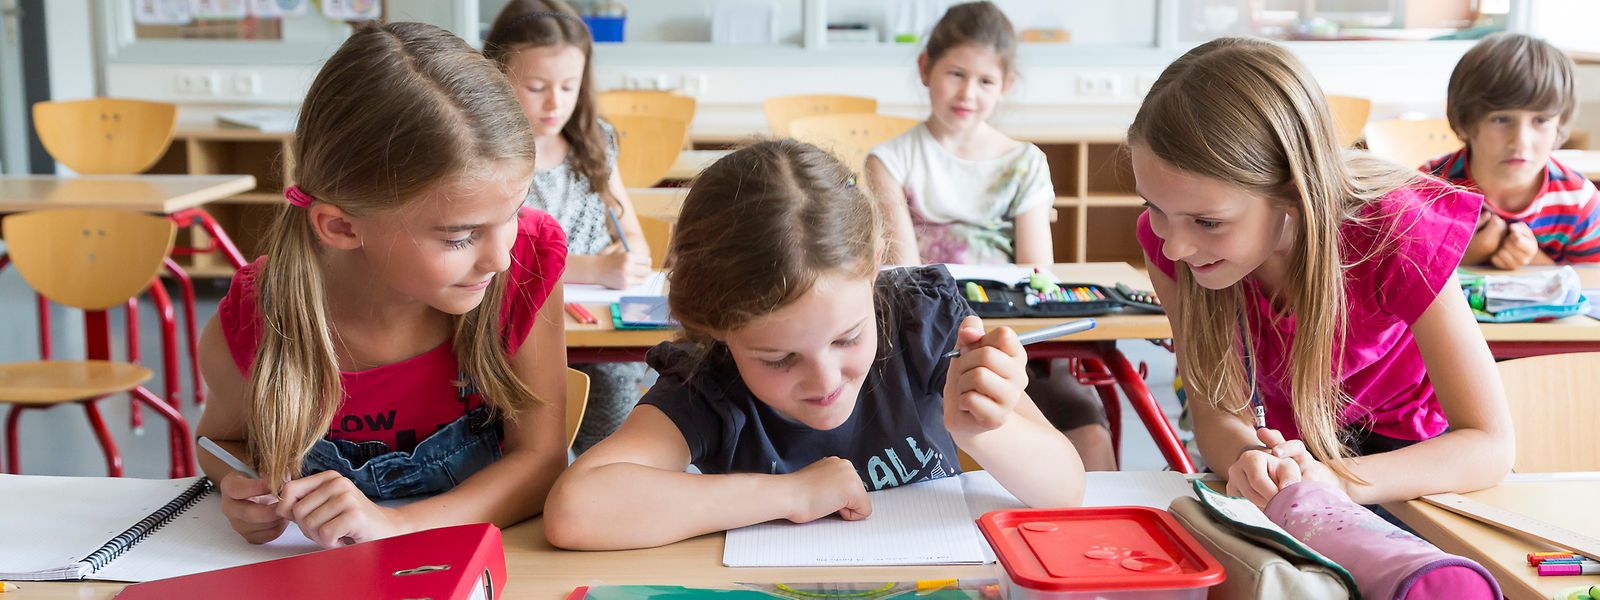 Pour les chercheuses, l'intégration des enfants ukrainiens dans l'enseignement ordinaire n'est pas un défi impossible à réaliser.